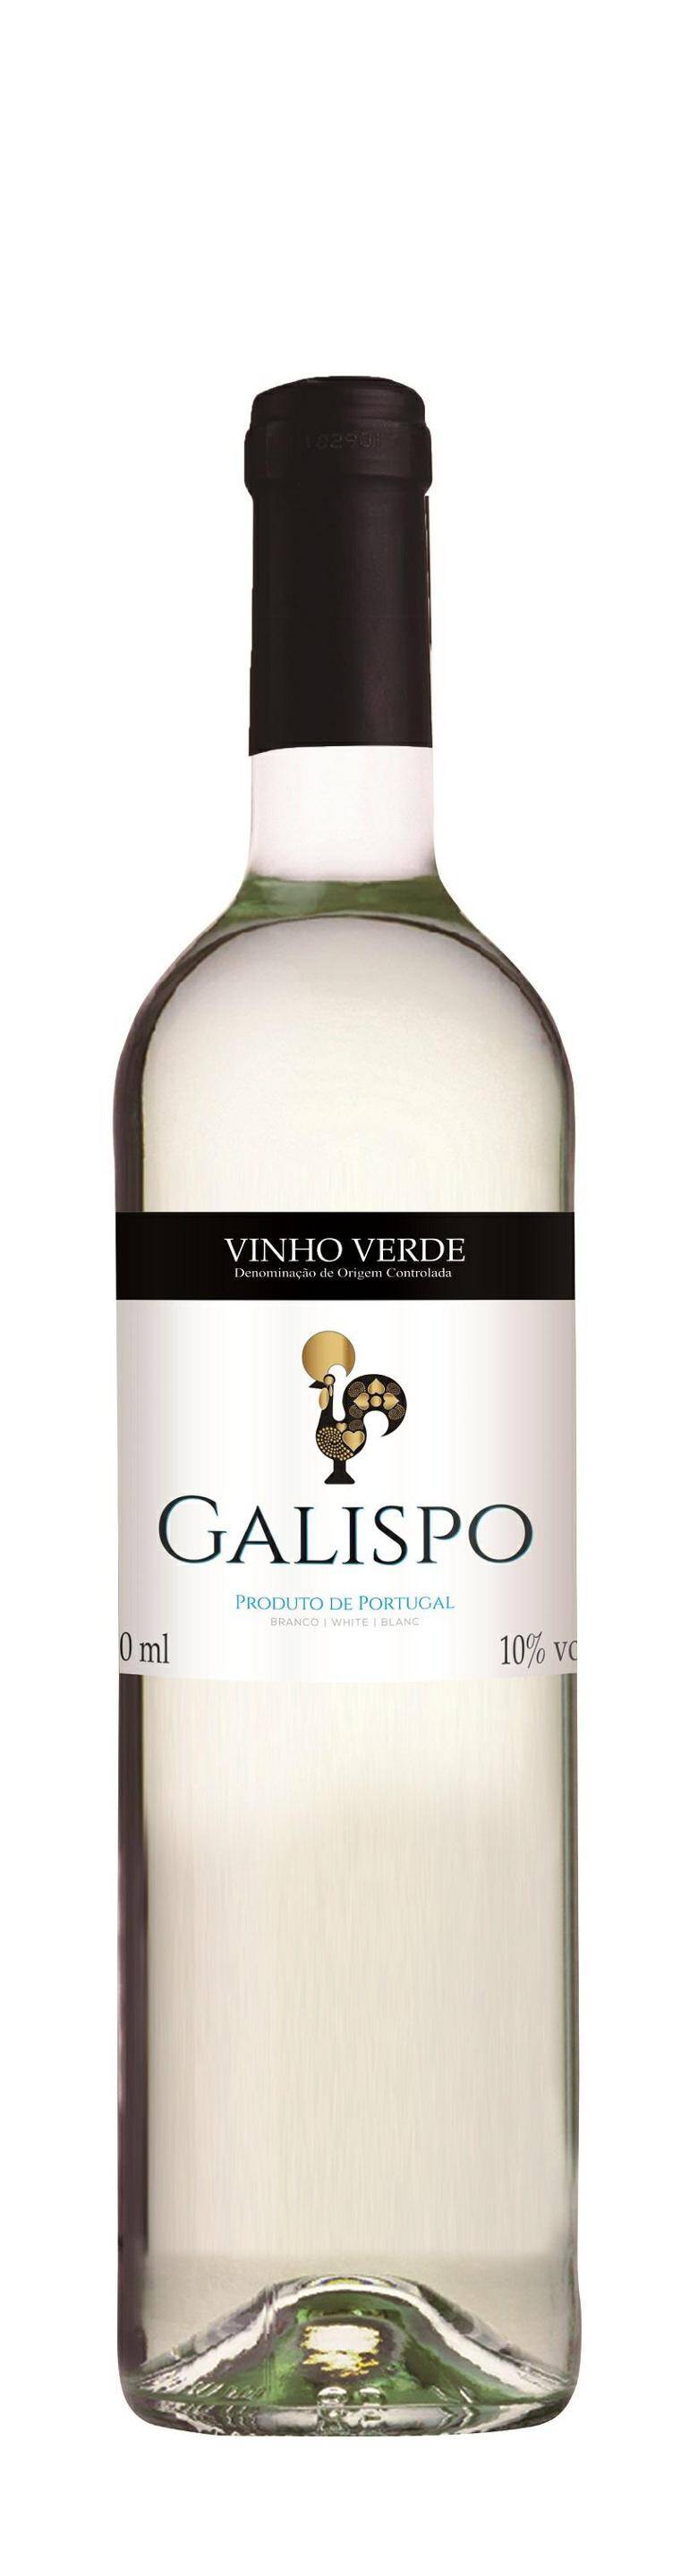 Galispo Vinho Verde BW PT (Zdjęcie 1)